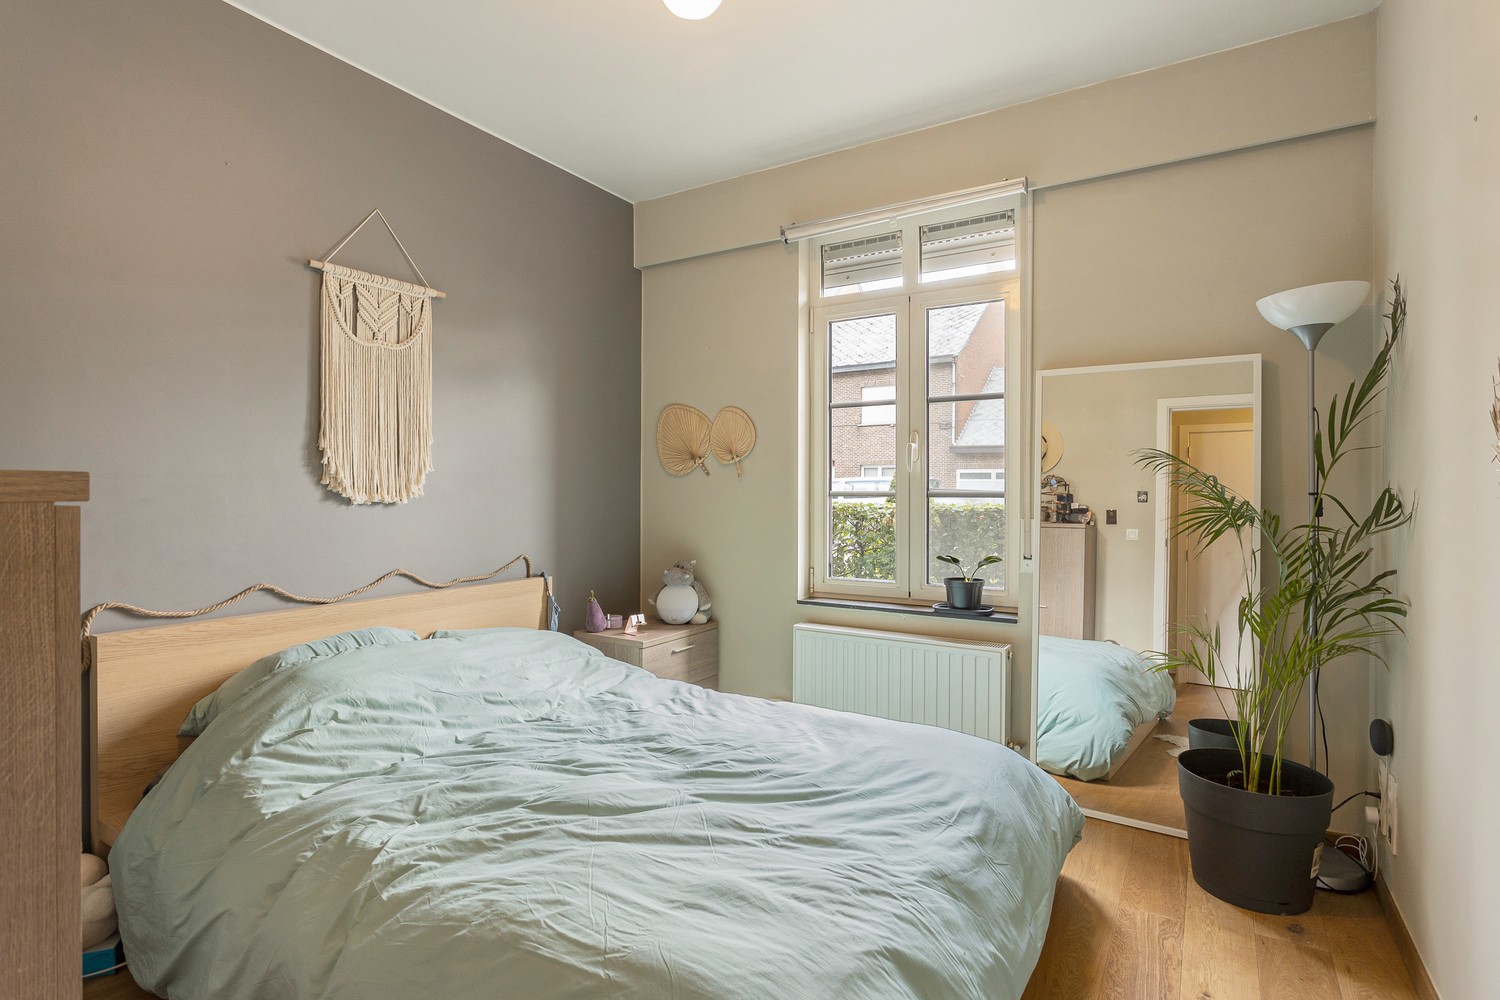 Zeer mooi gelijkvloers appartement met zonnige tuin, 2 slaapkamers & garage in Grobbendonk! afbeelding 13